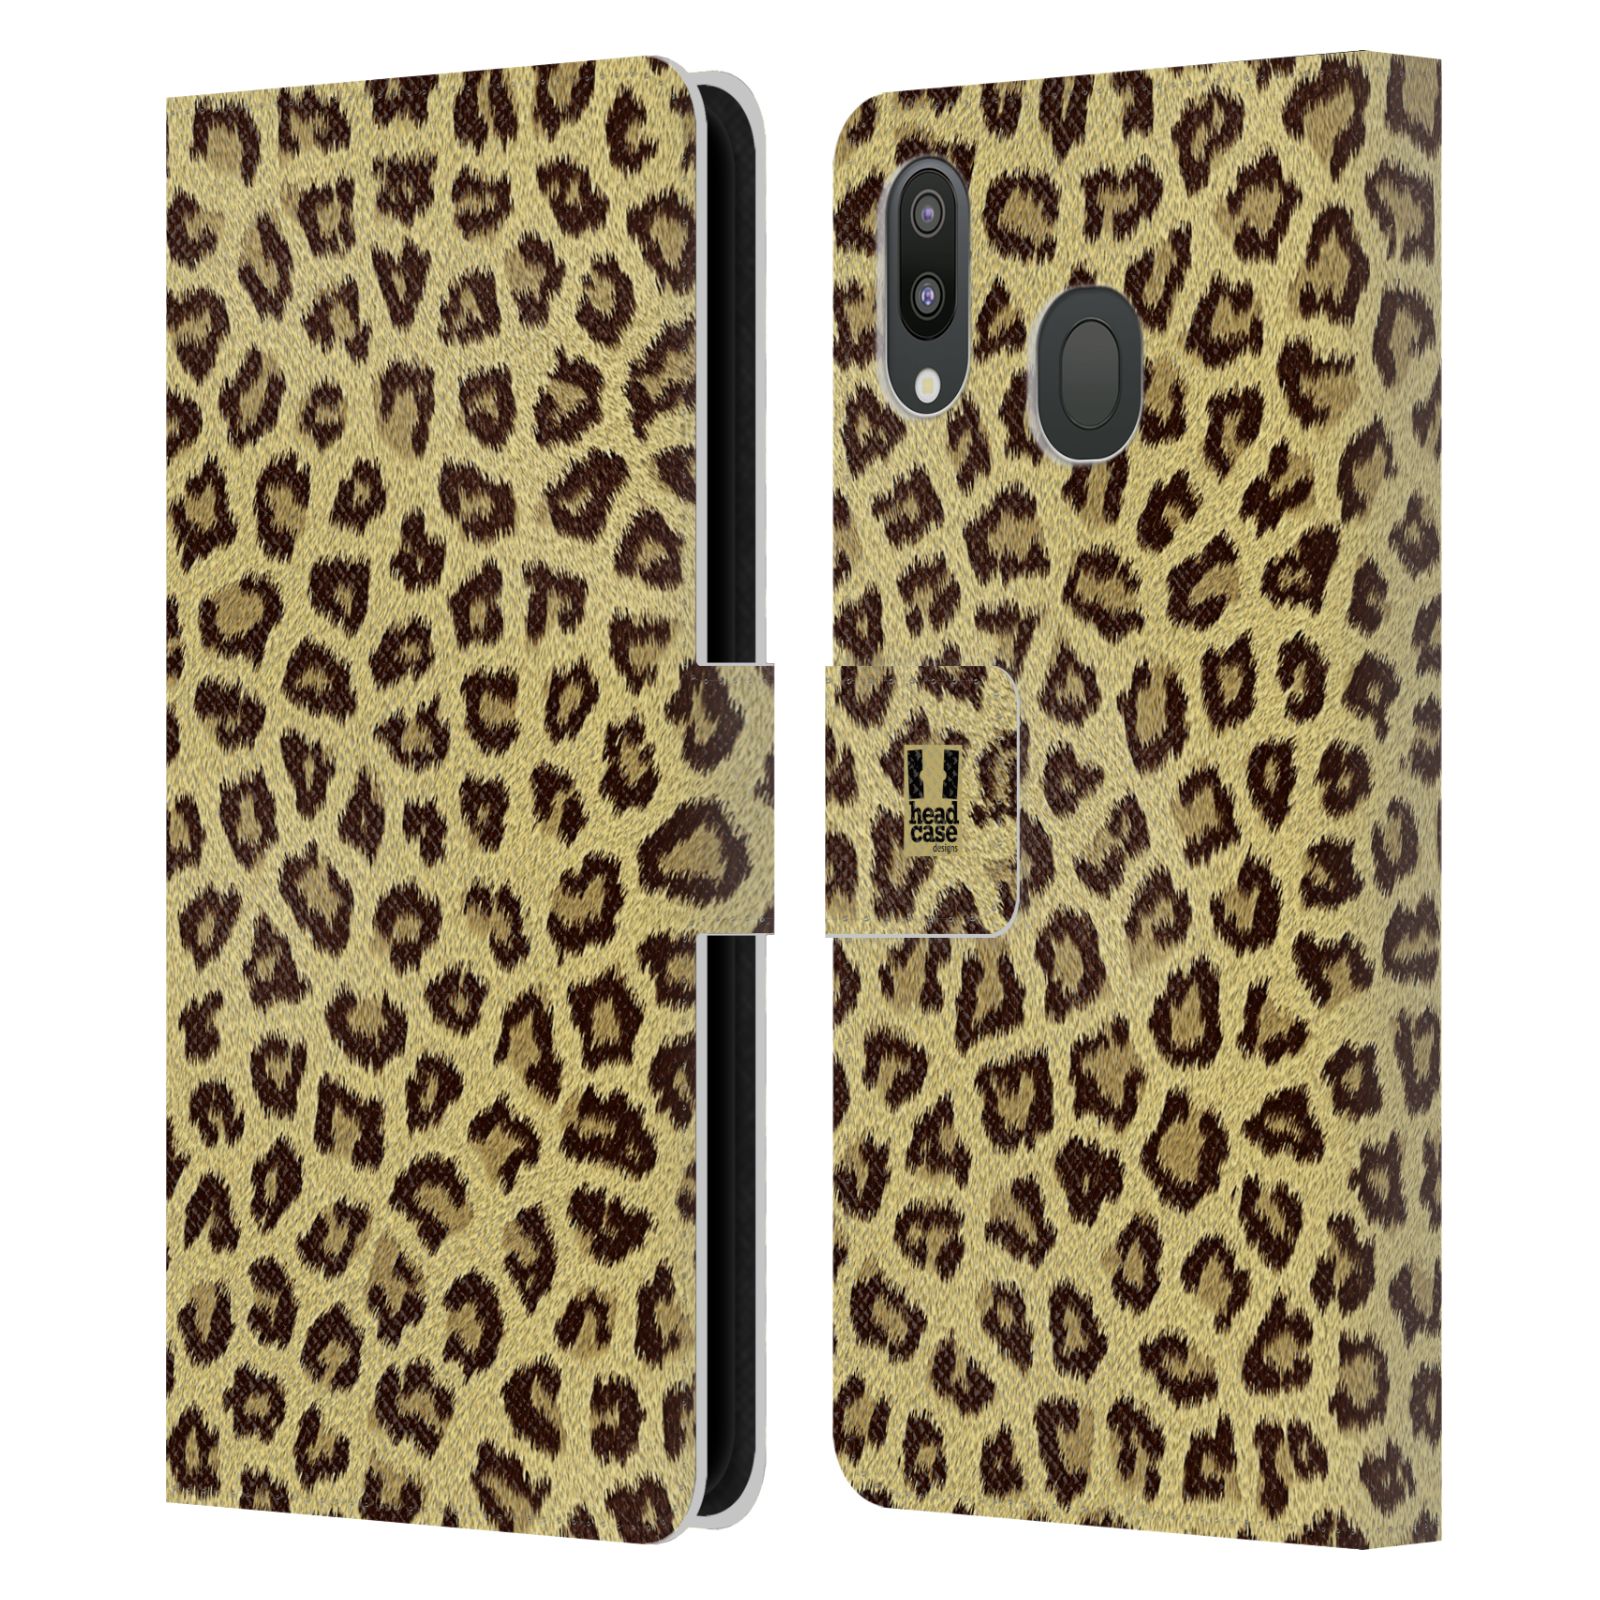 Pouzdro na mobil Samsung Galaxy M20 zvíře srst divoká kolekce jaguár, gepard